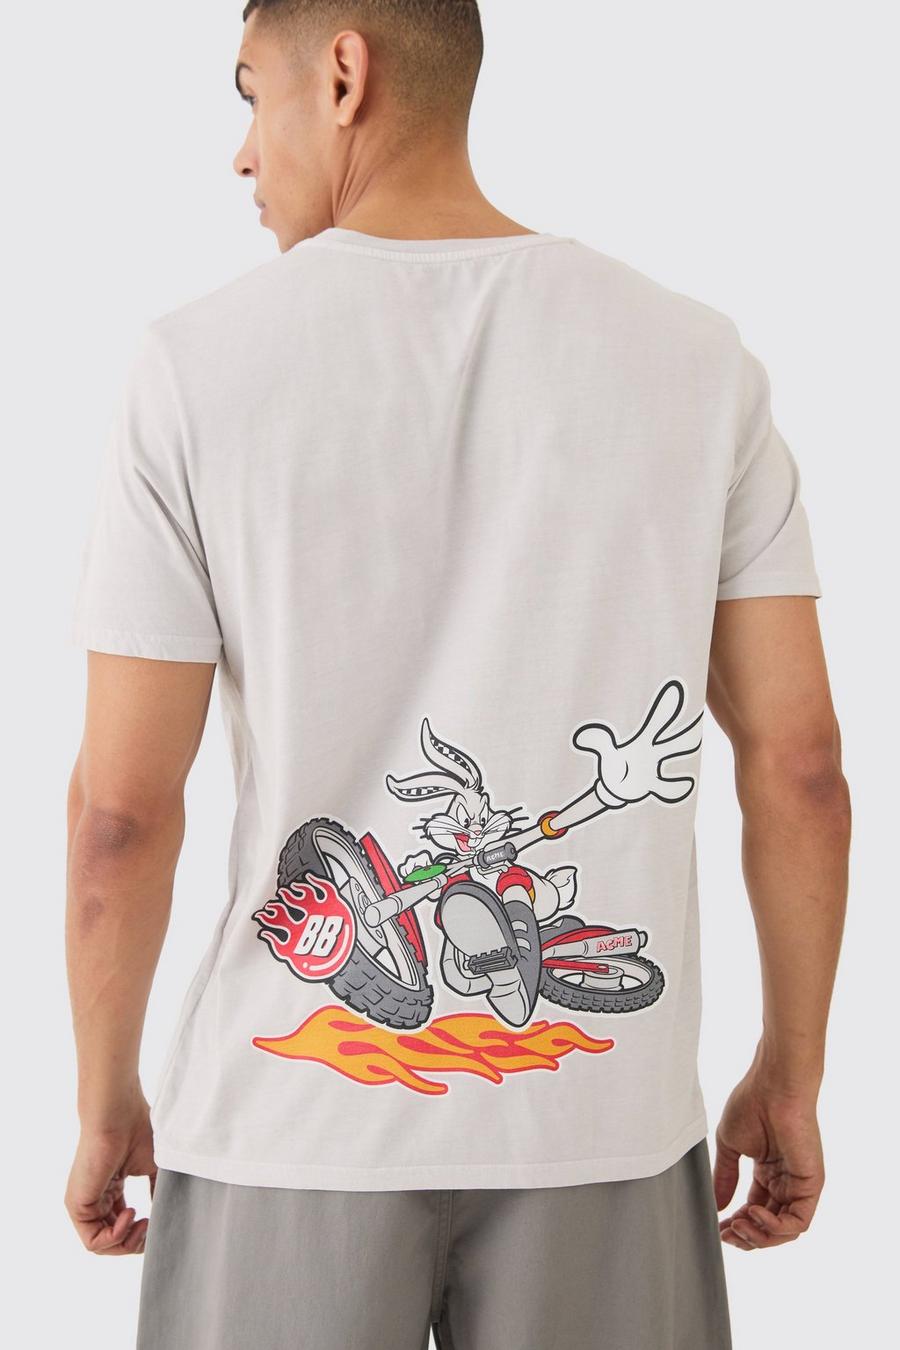 Camiseta oversize con lavado a la piedra de Bugs Bunny de los Looney Tunes, Stone image number 1